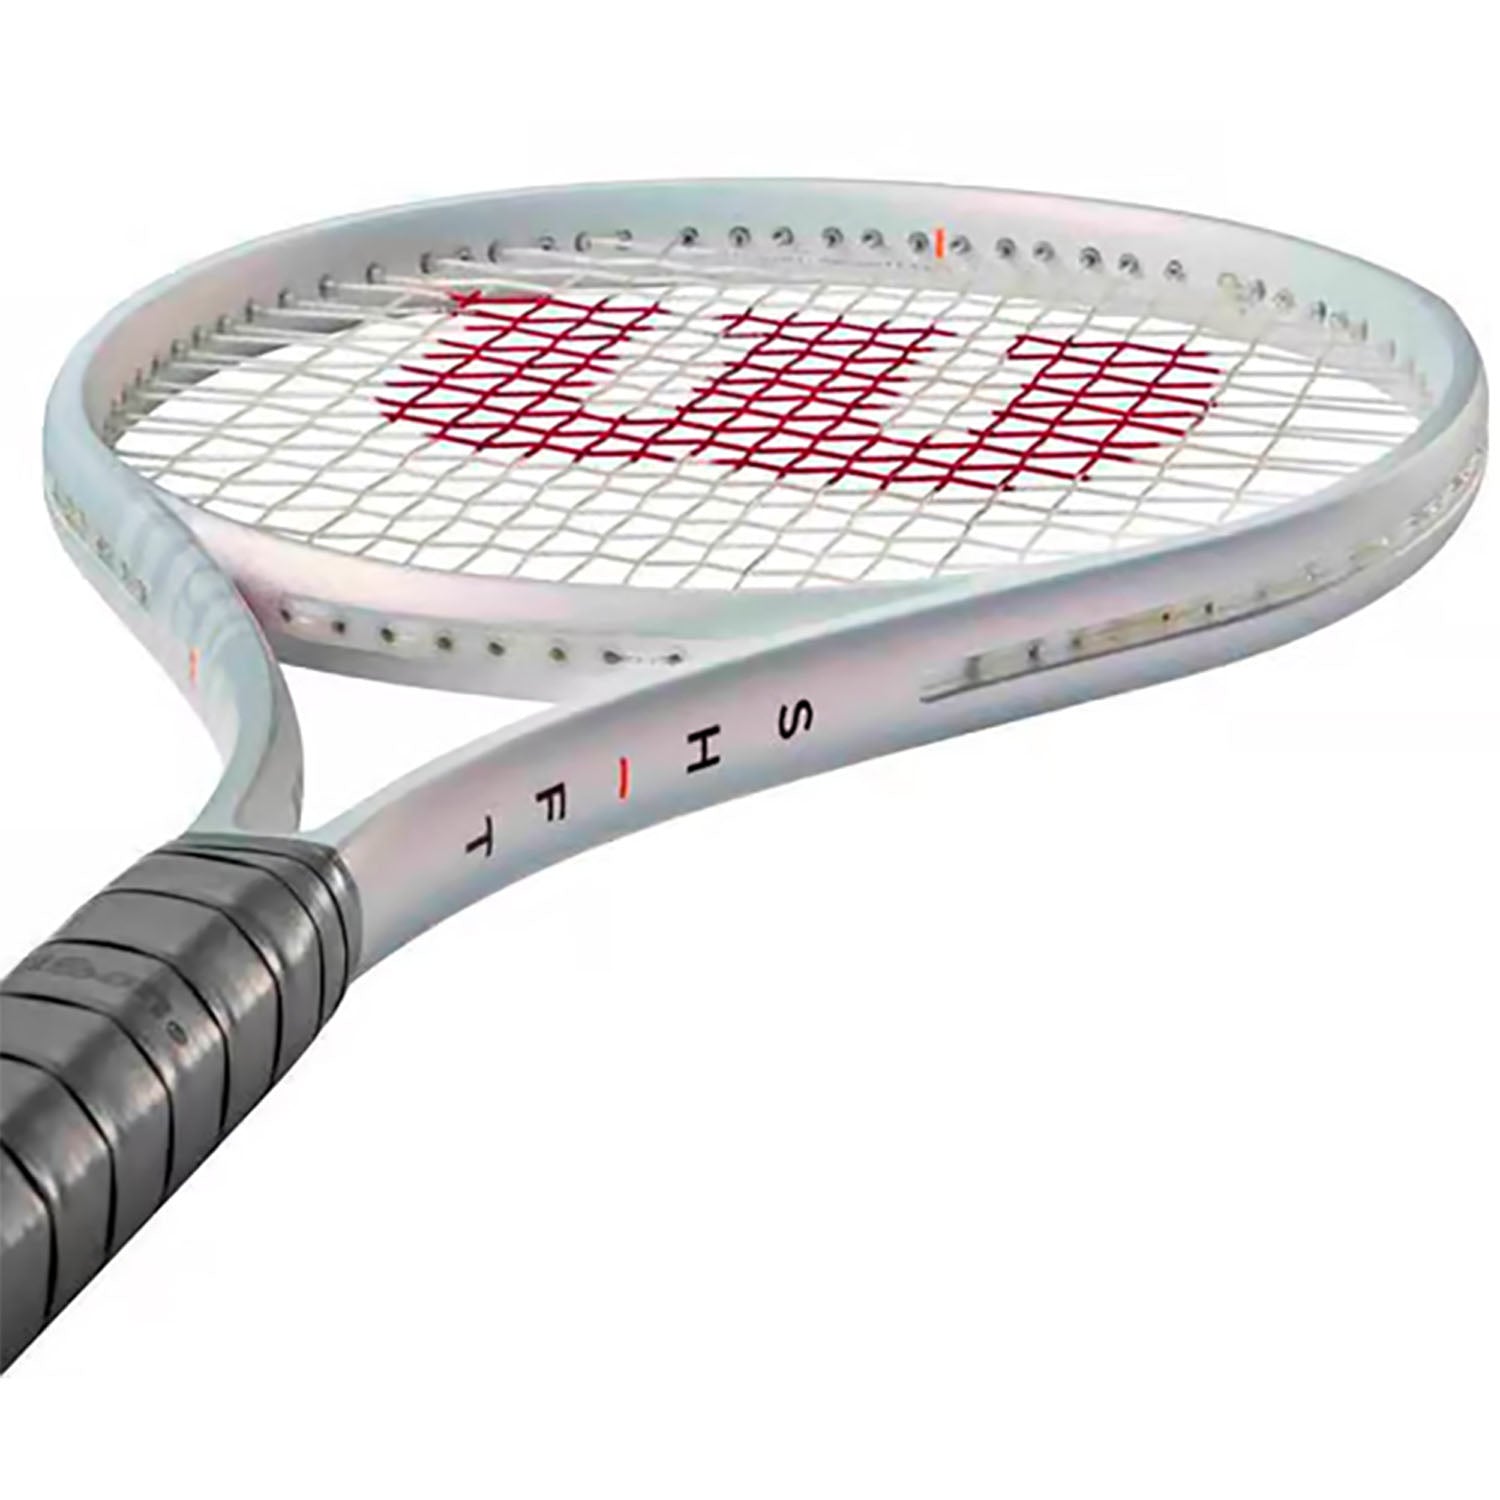 Wilson Shift 99 Pro V1 Frm 3 Unstrung Tennis Racquet - Best Price online Prokicksports.com